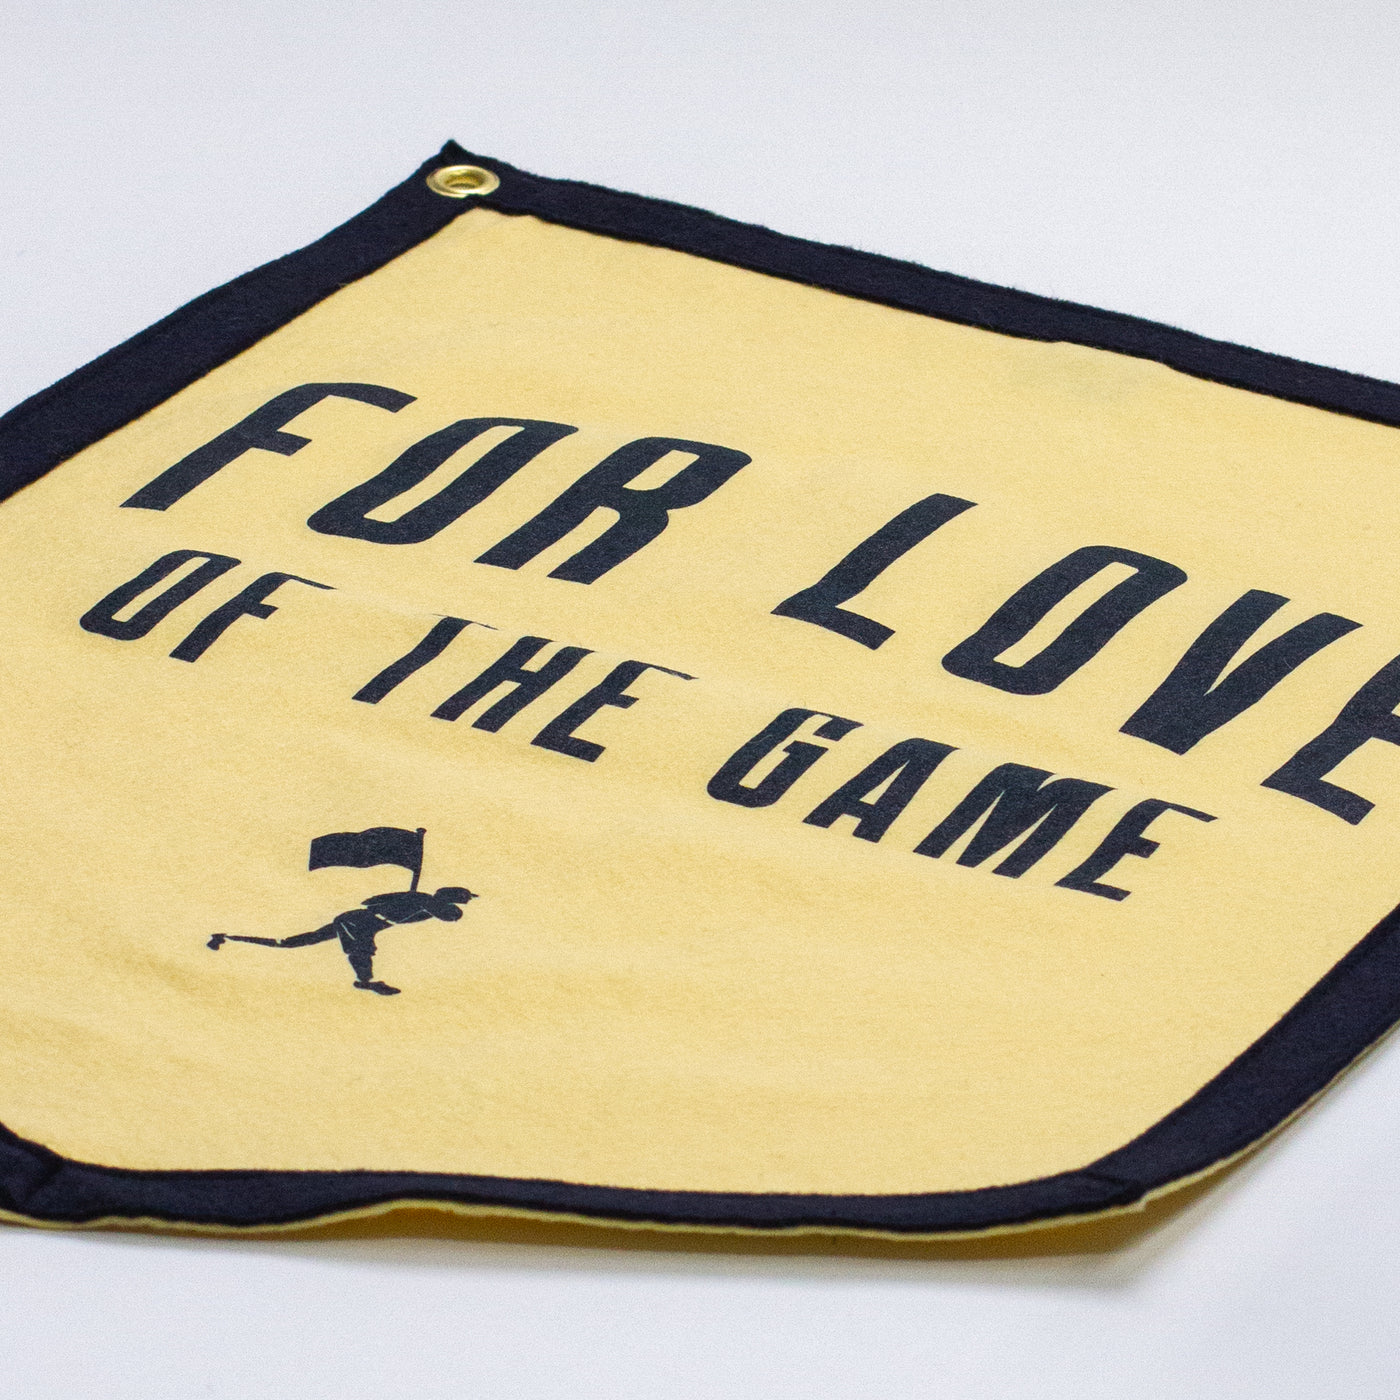 For Love of the Game ピンバナー - Baseballism x オックスフォード ペナント